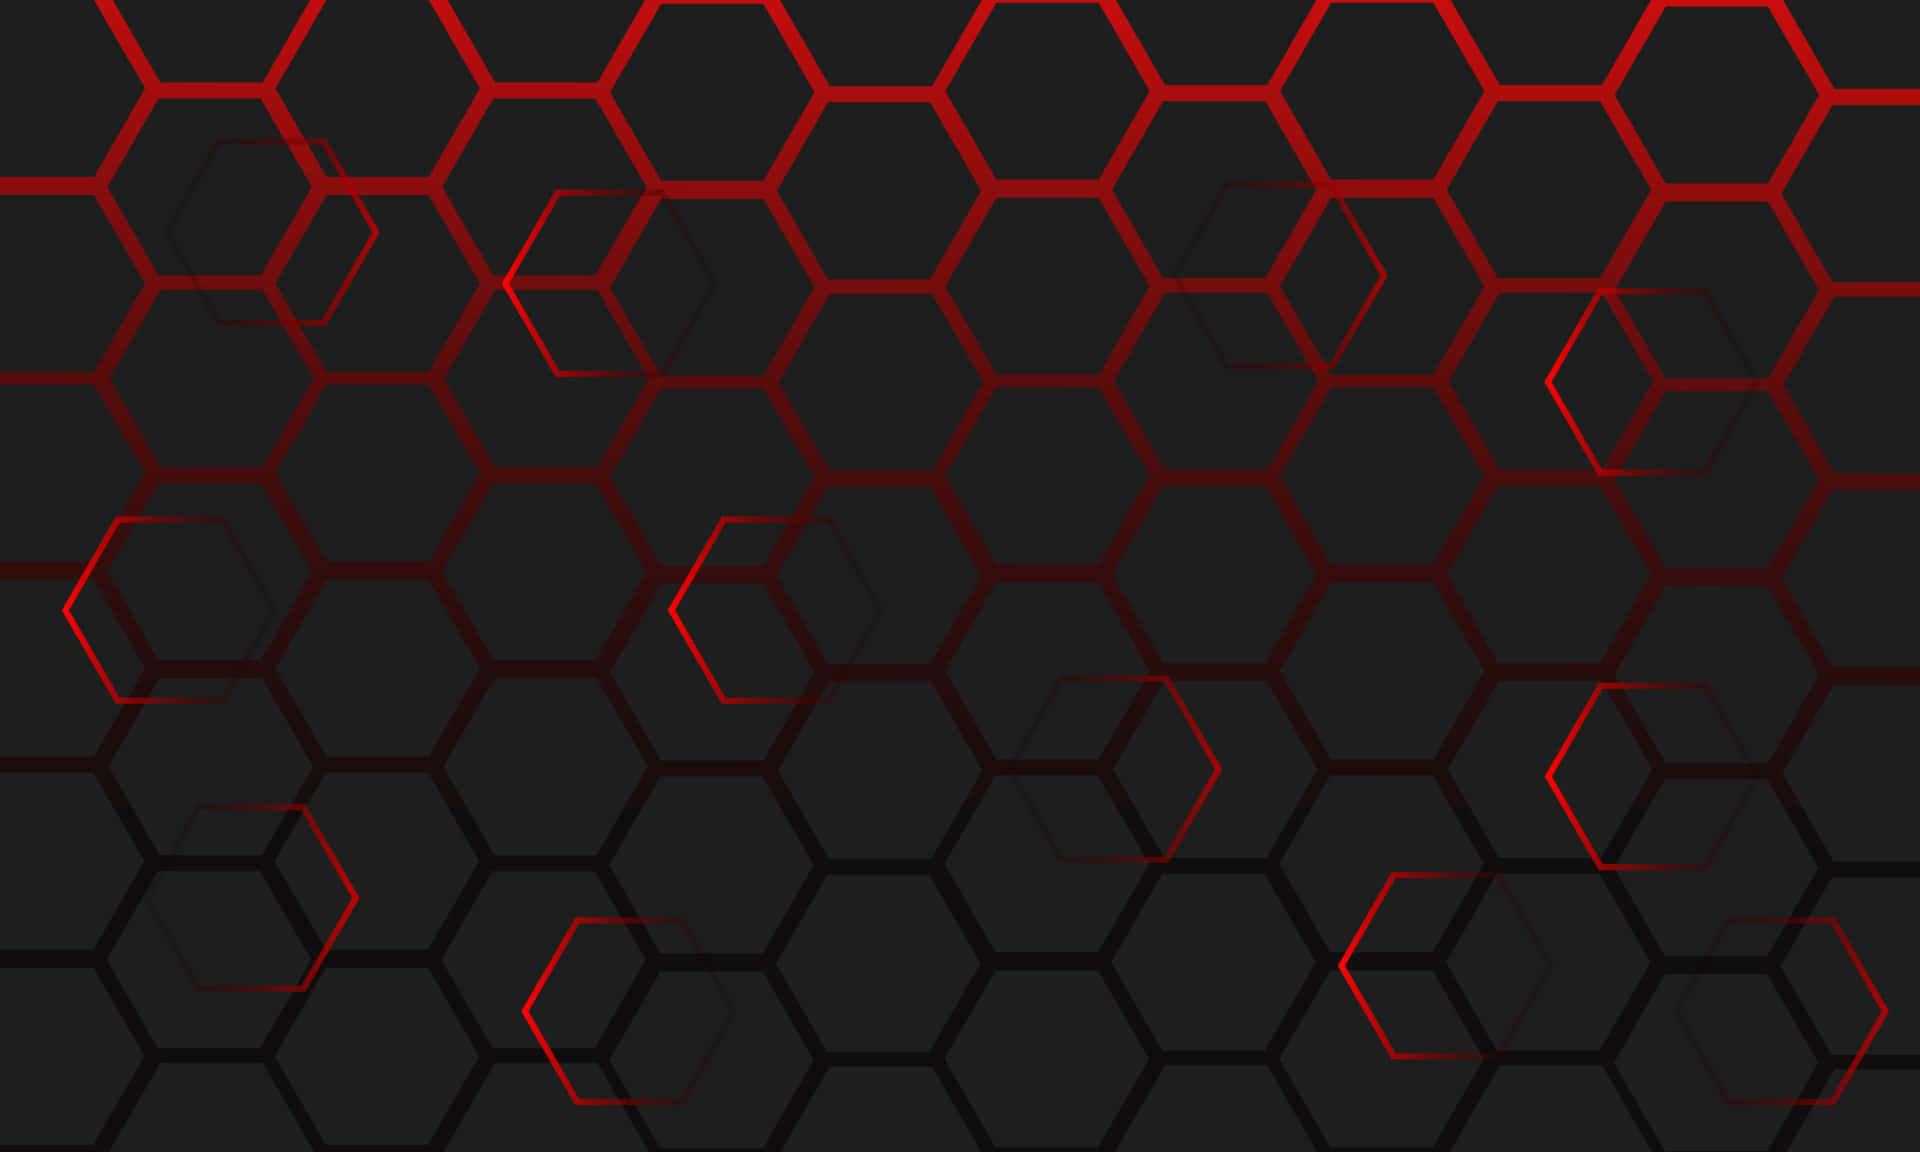 Rødhexagon Baggrund Med Sorte Og Røde Hexagoner.